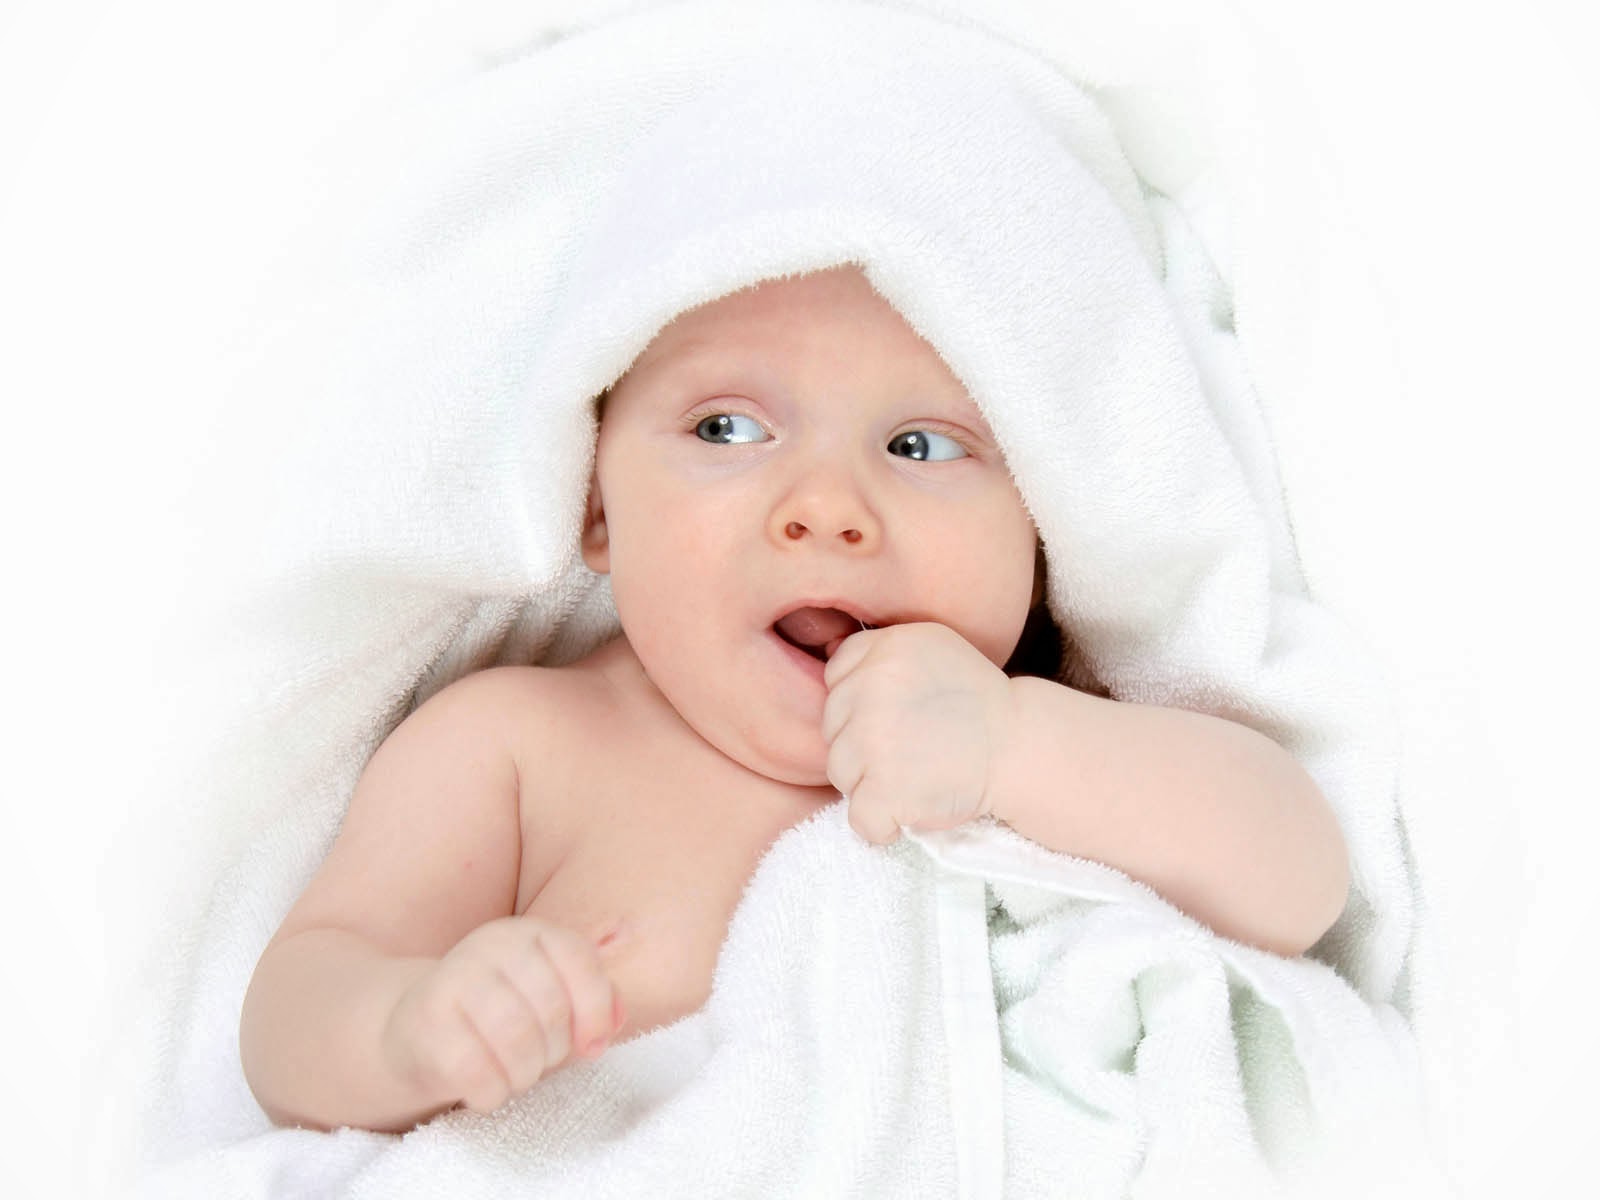 fonds d'écran bébé garçon pour mobile,enfant,bébé,bambin,rose,bouche